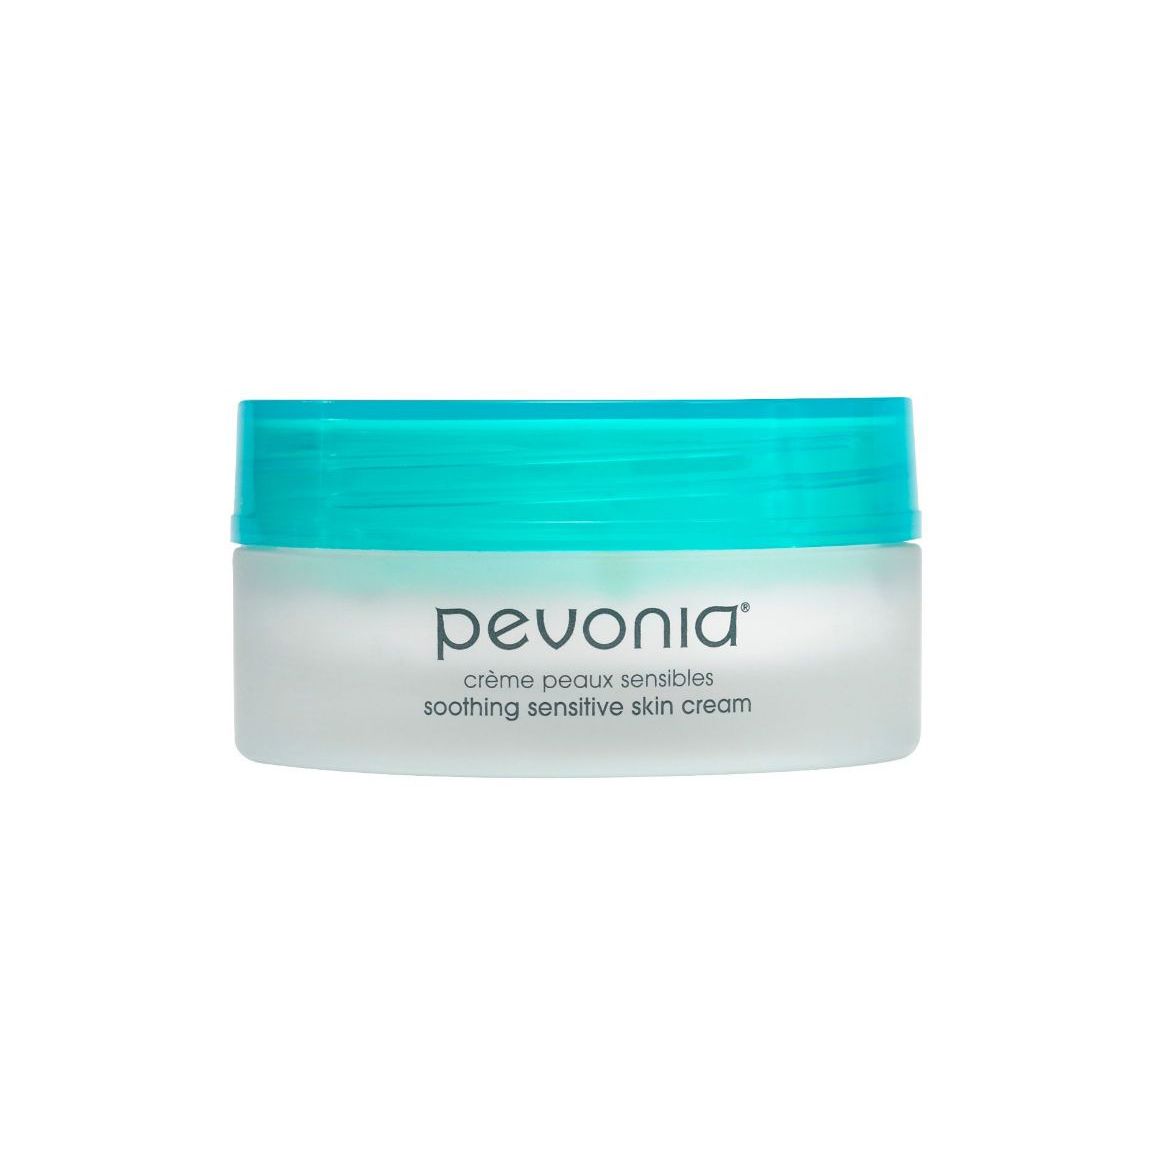 Bild von Pevonia Soothing Sensitive Skin Cream (50ml)